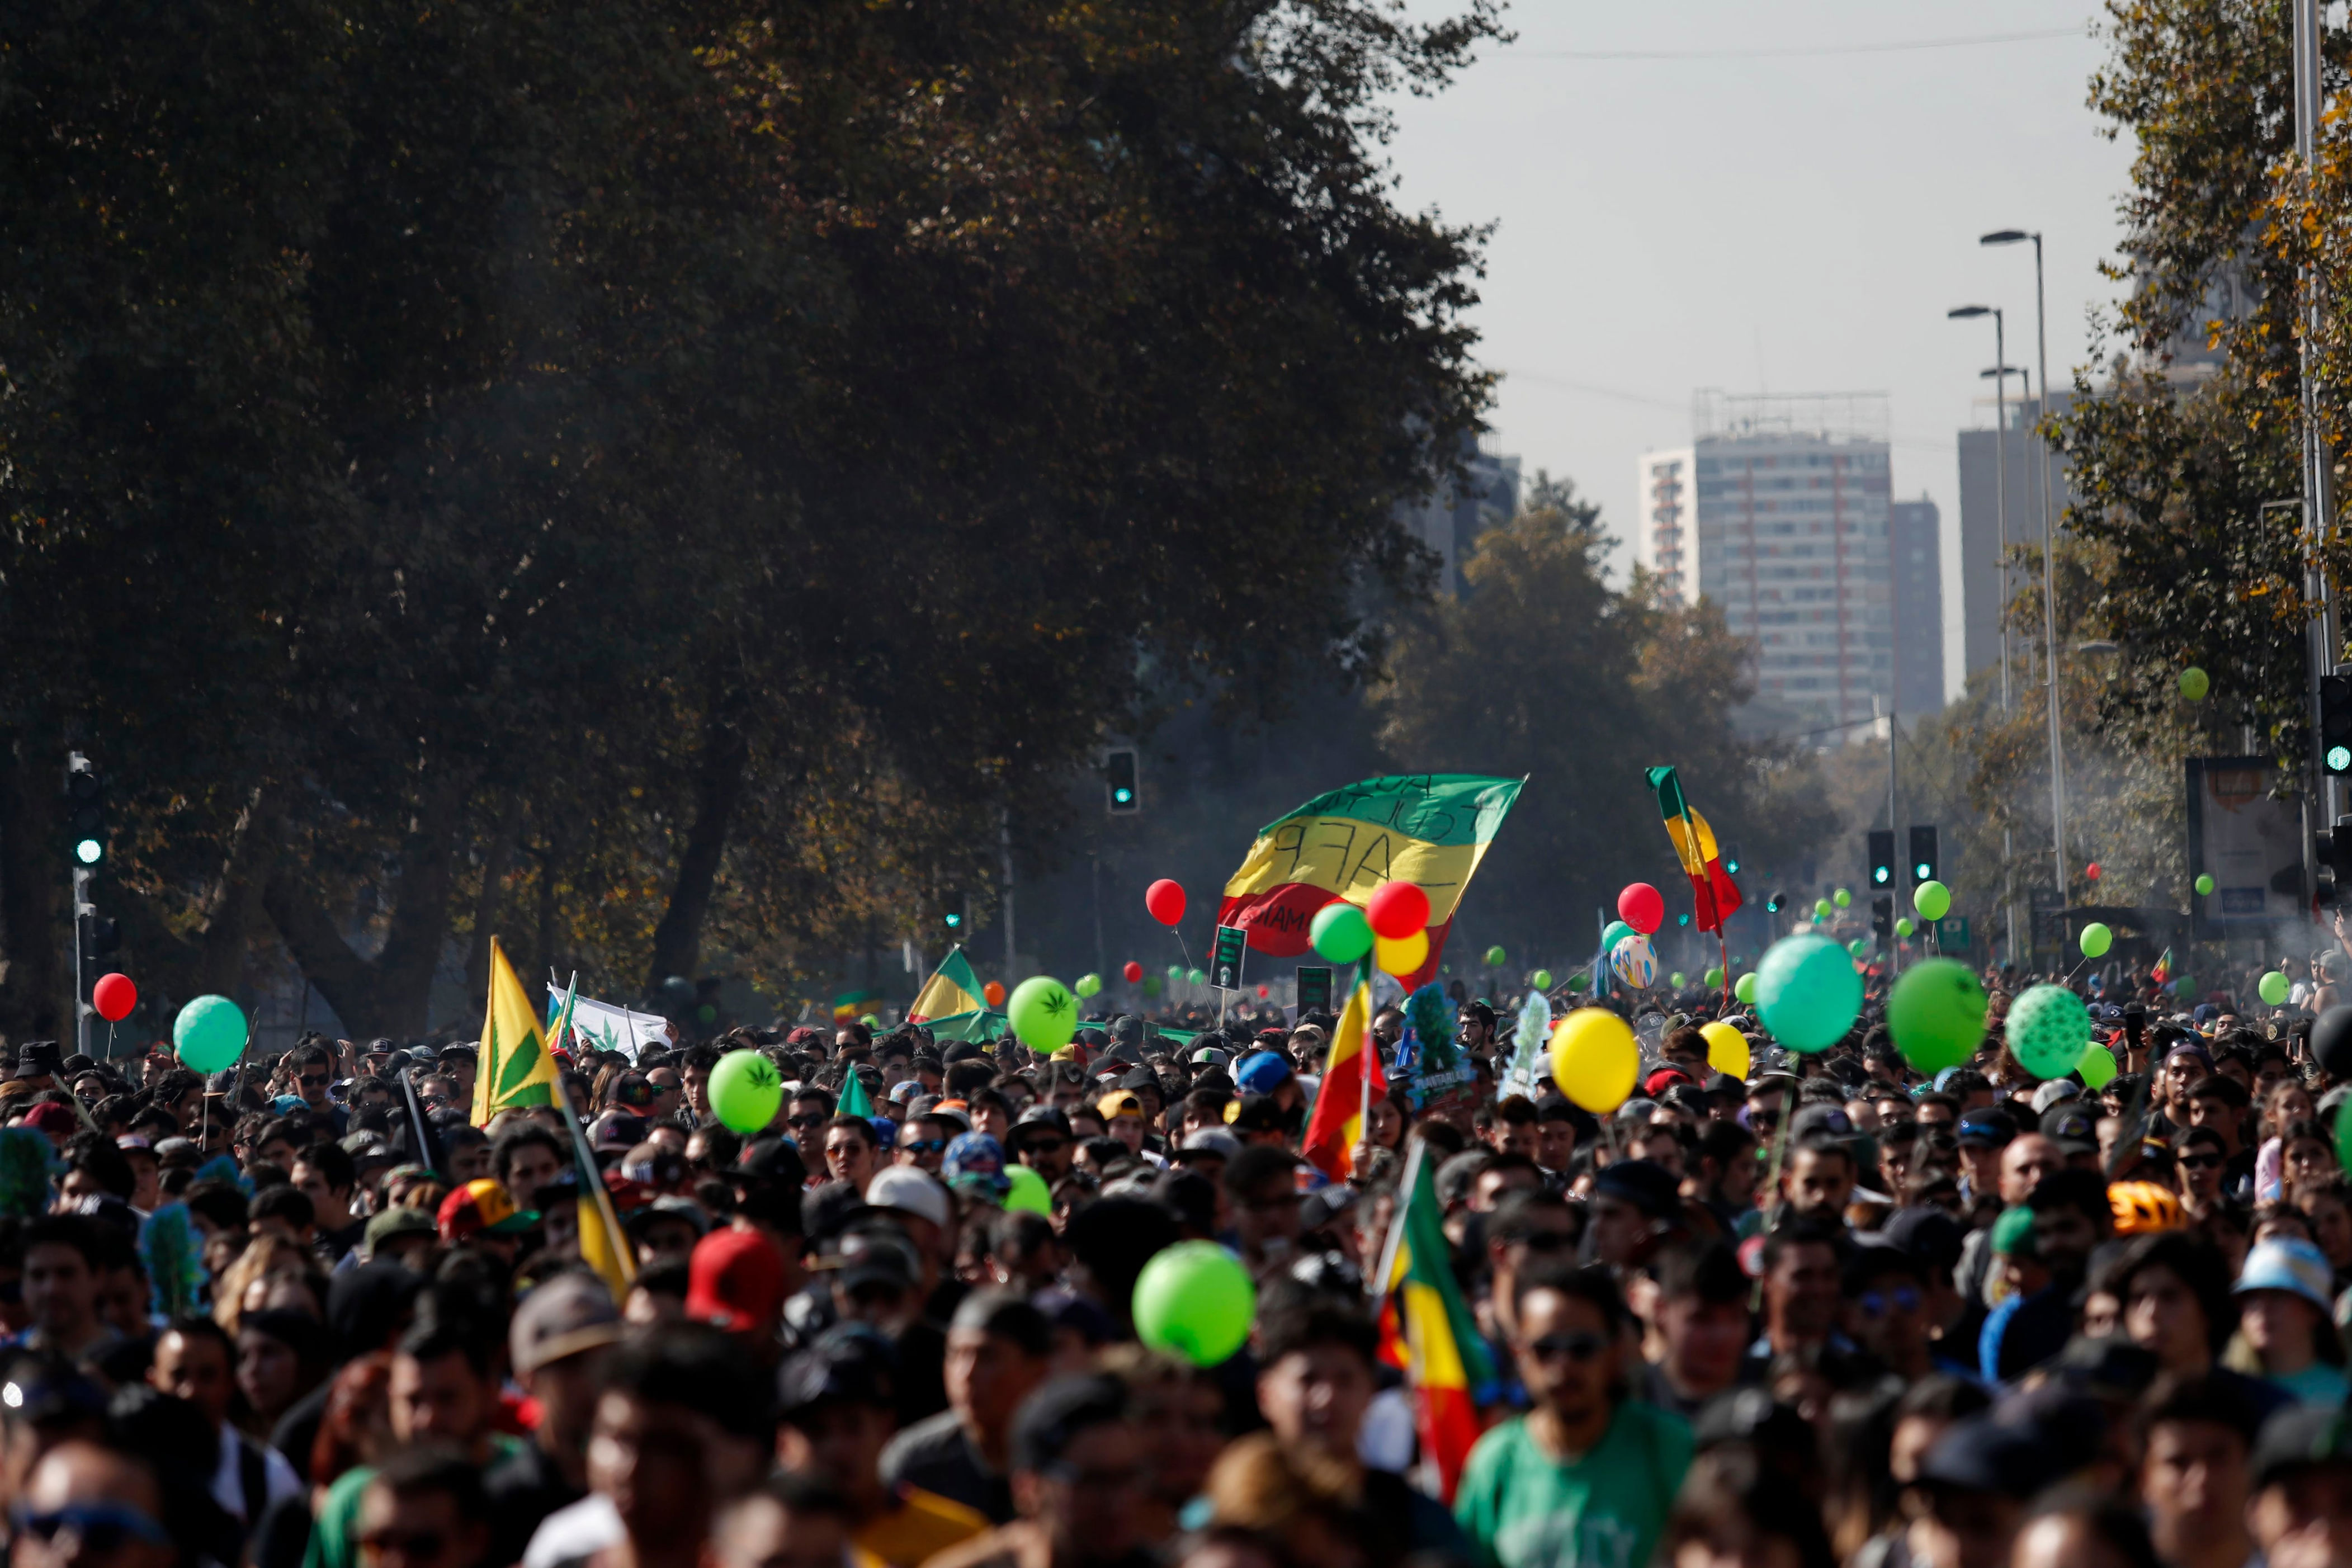 marcha cultiva tus derechos: cientos de personas llegan hasta plaza baquedano